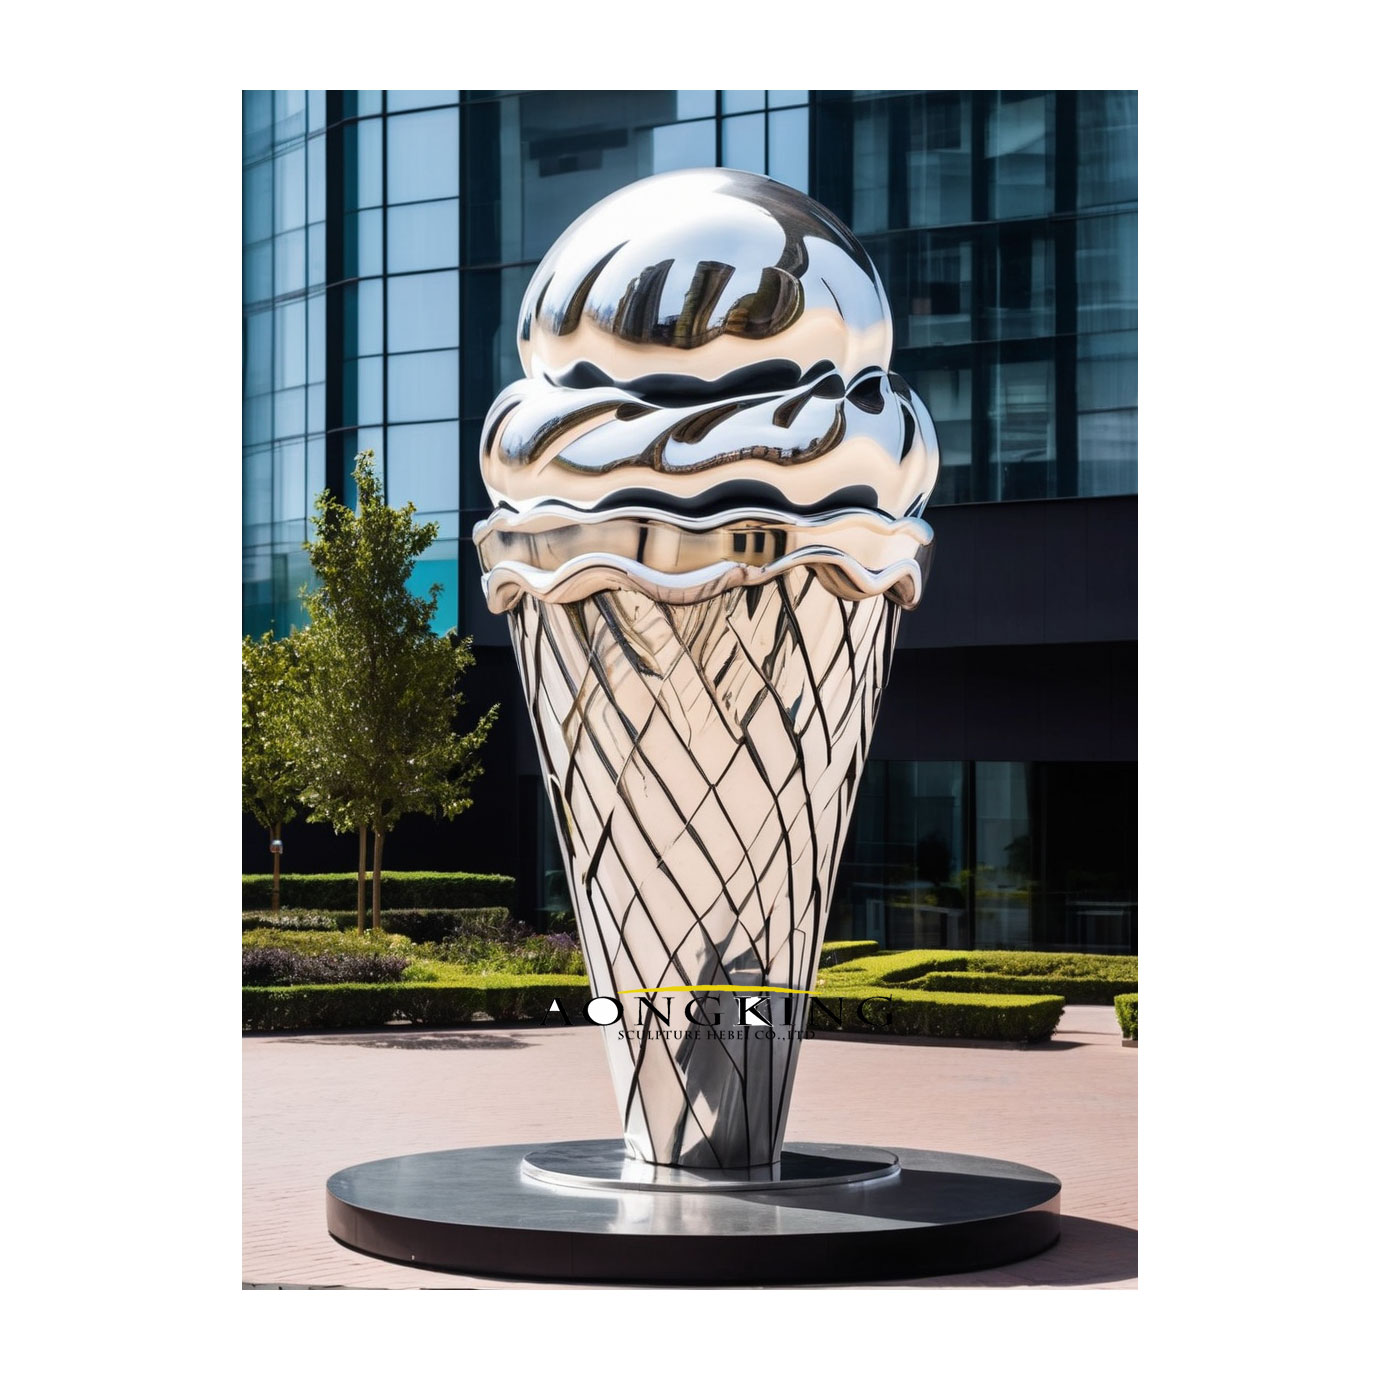 cool ice cream sculpture